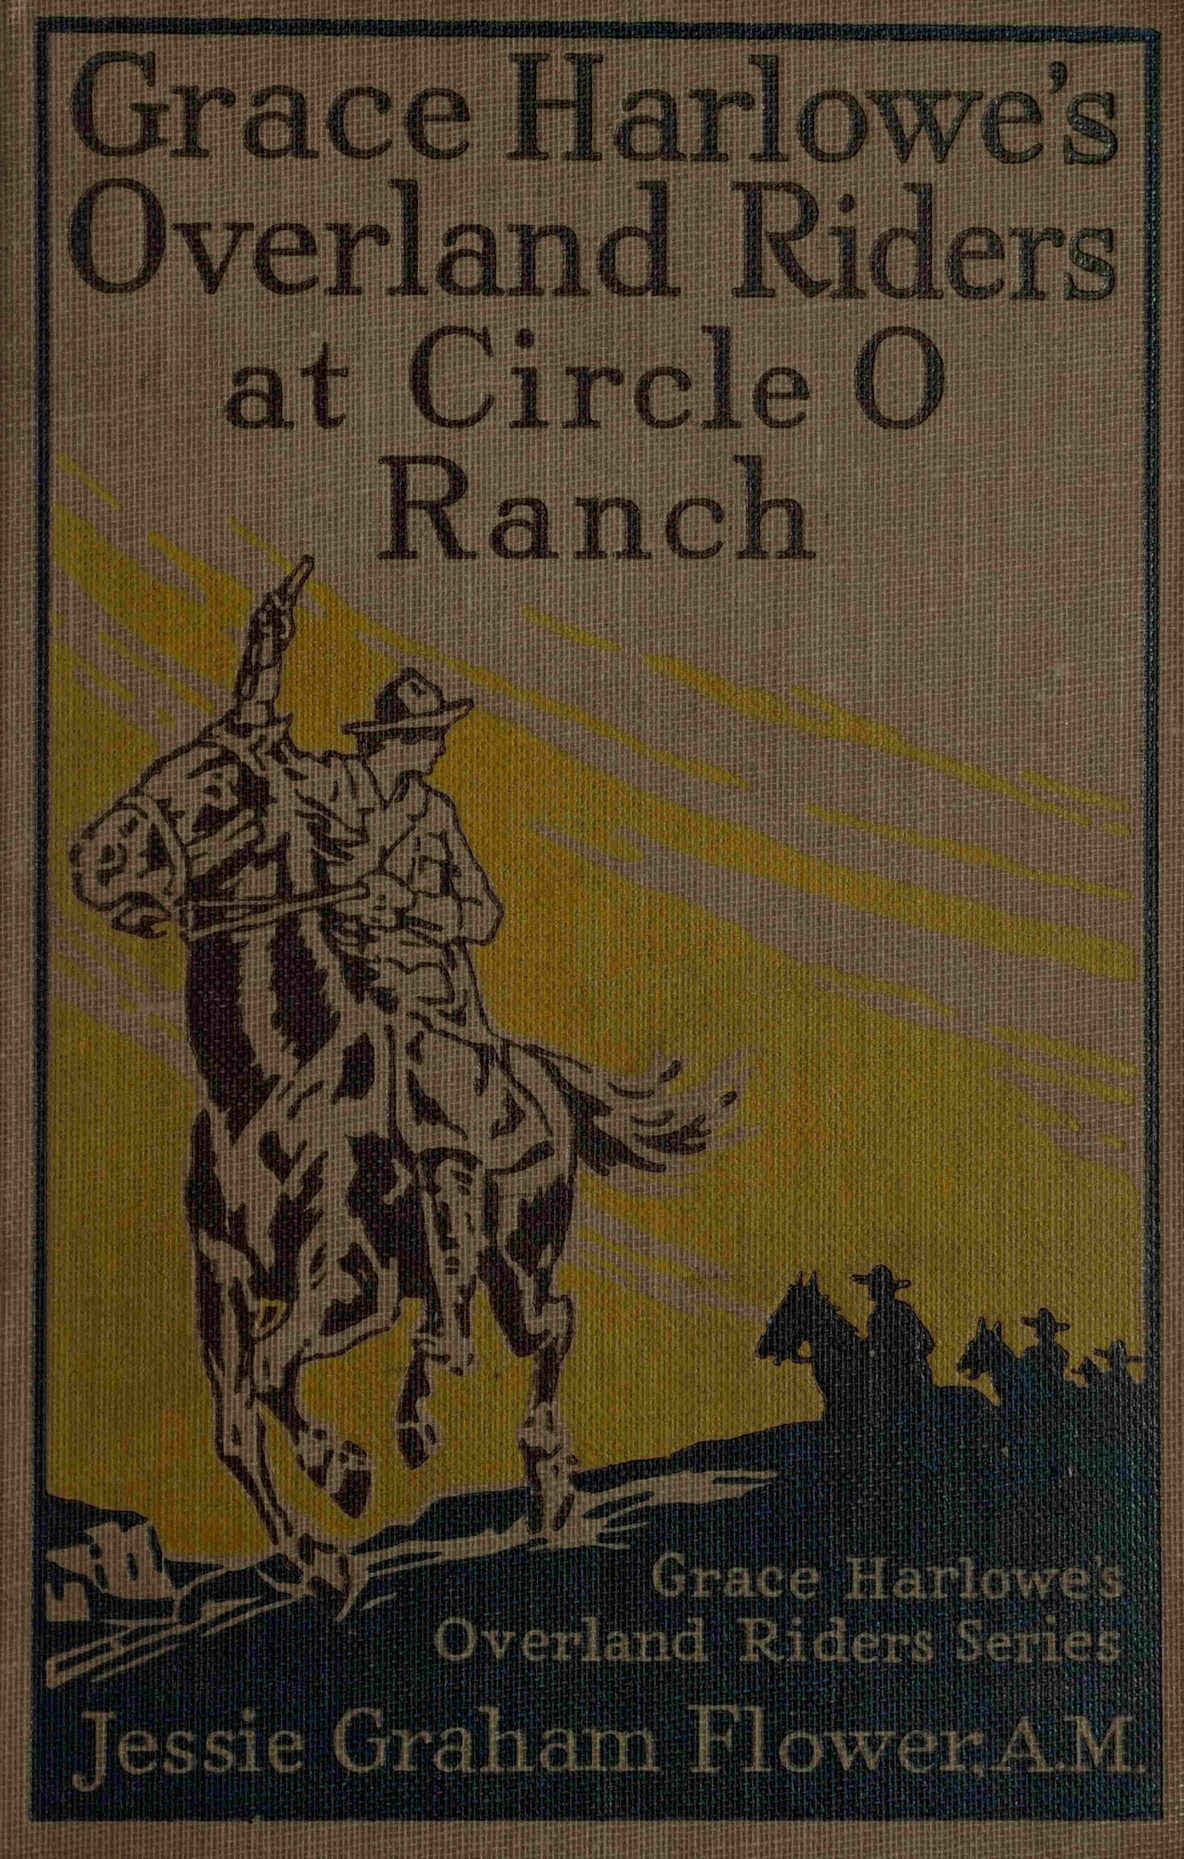 Grace Harlowe'nin Overland Riders'ı Circle O Çiftliği'nde